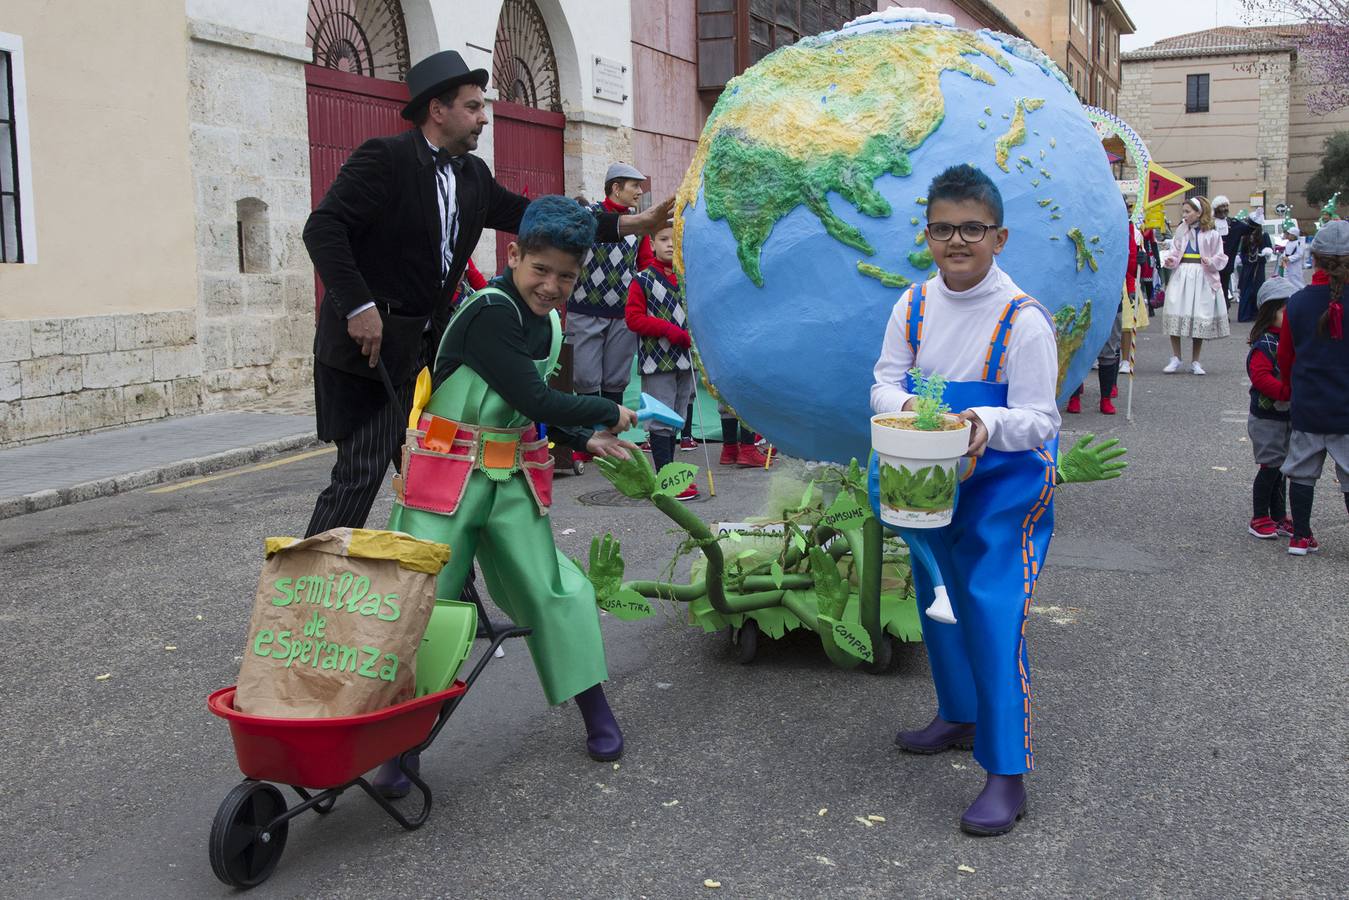 Fotos: Participantes en el carnaval de Toro (Zamora)